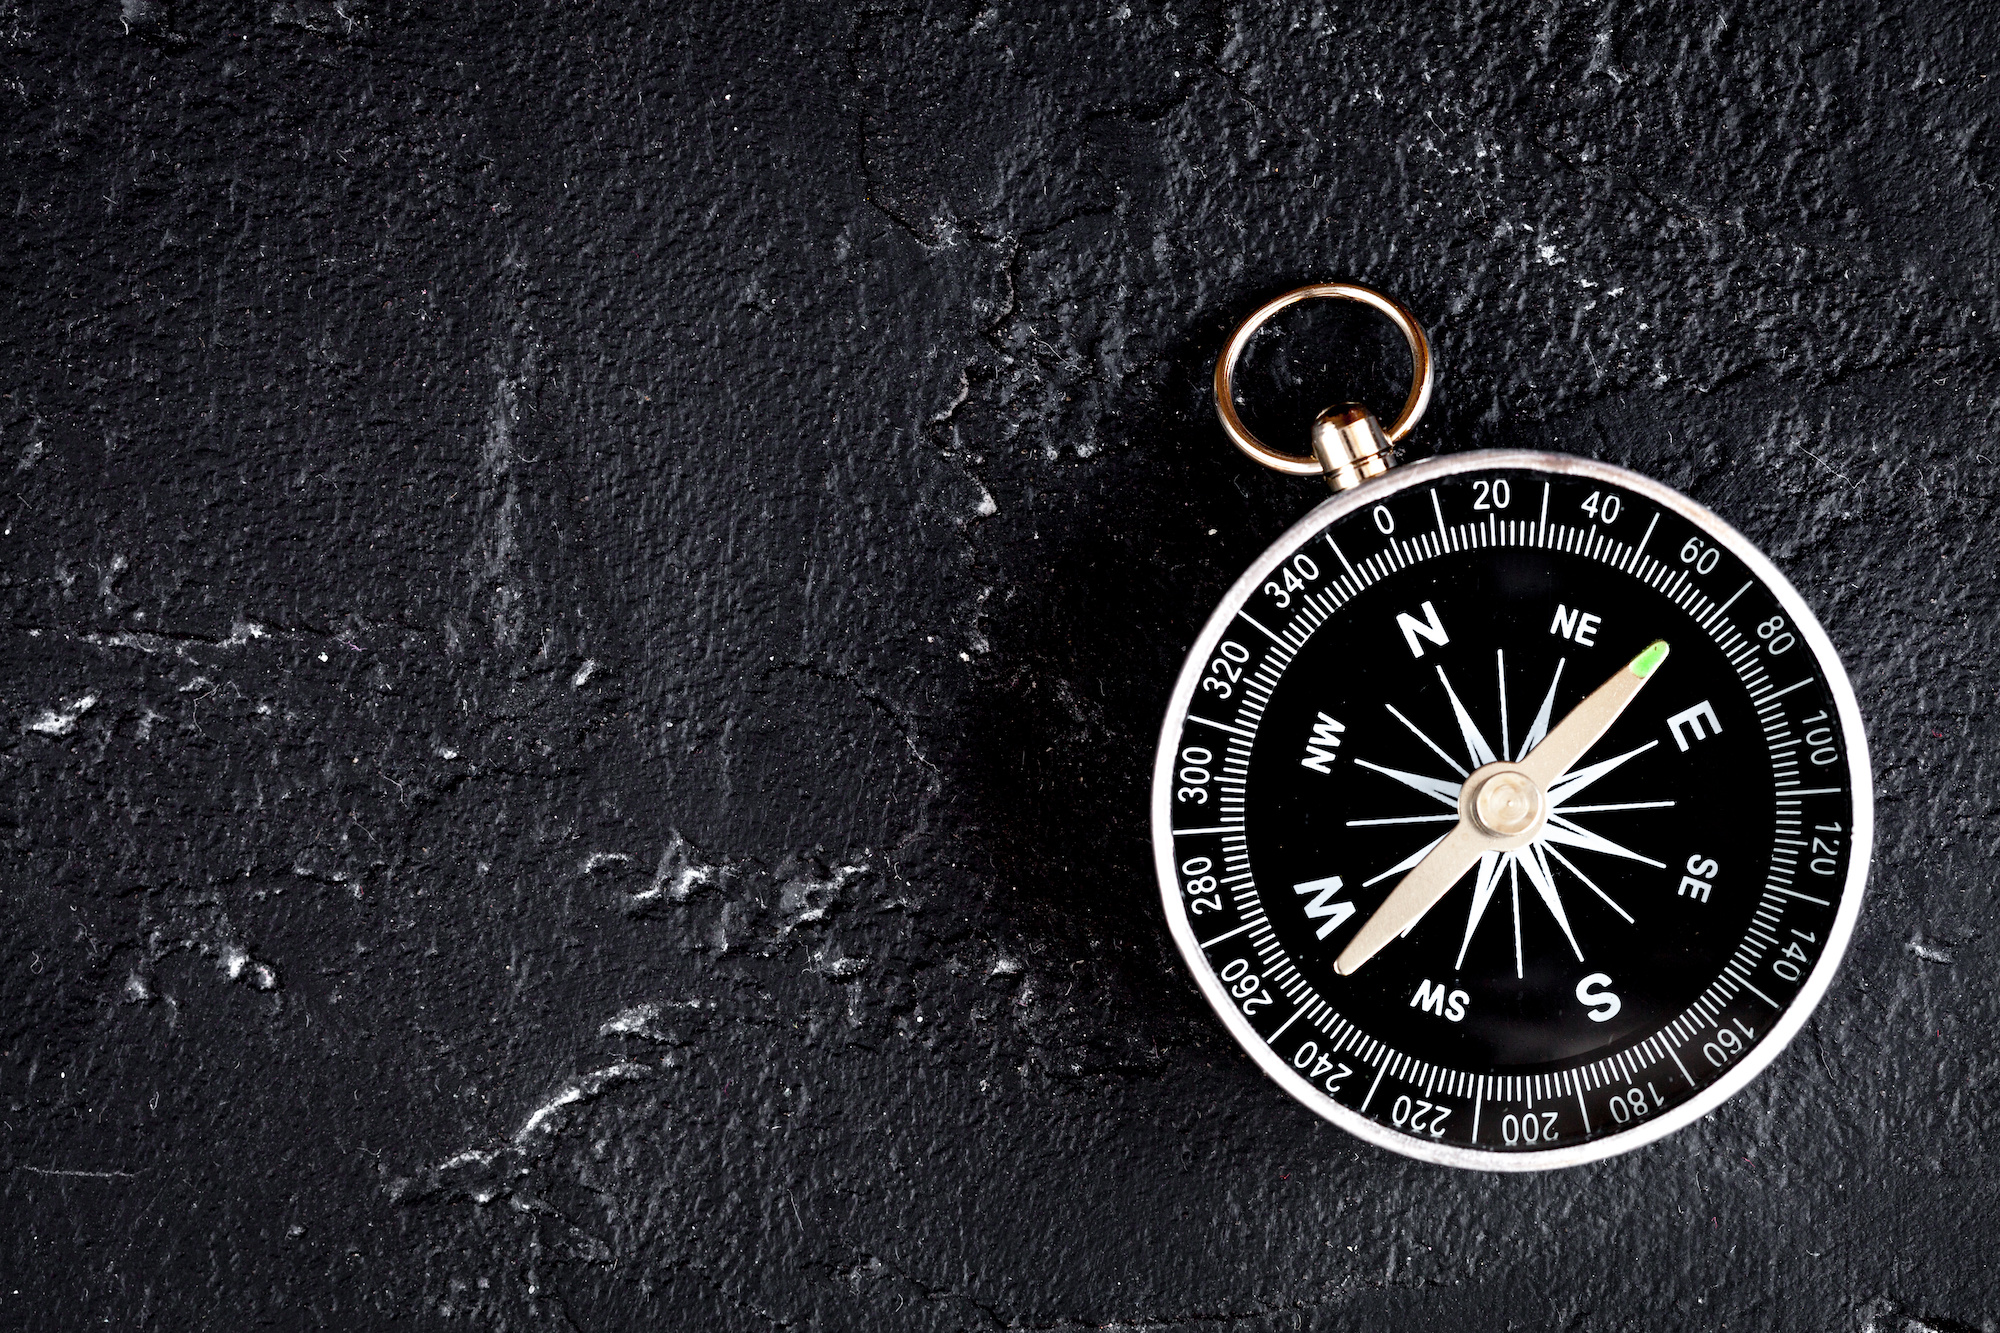 The 3 Question Entrepreneur's Compass